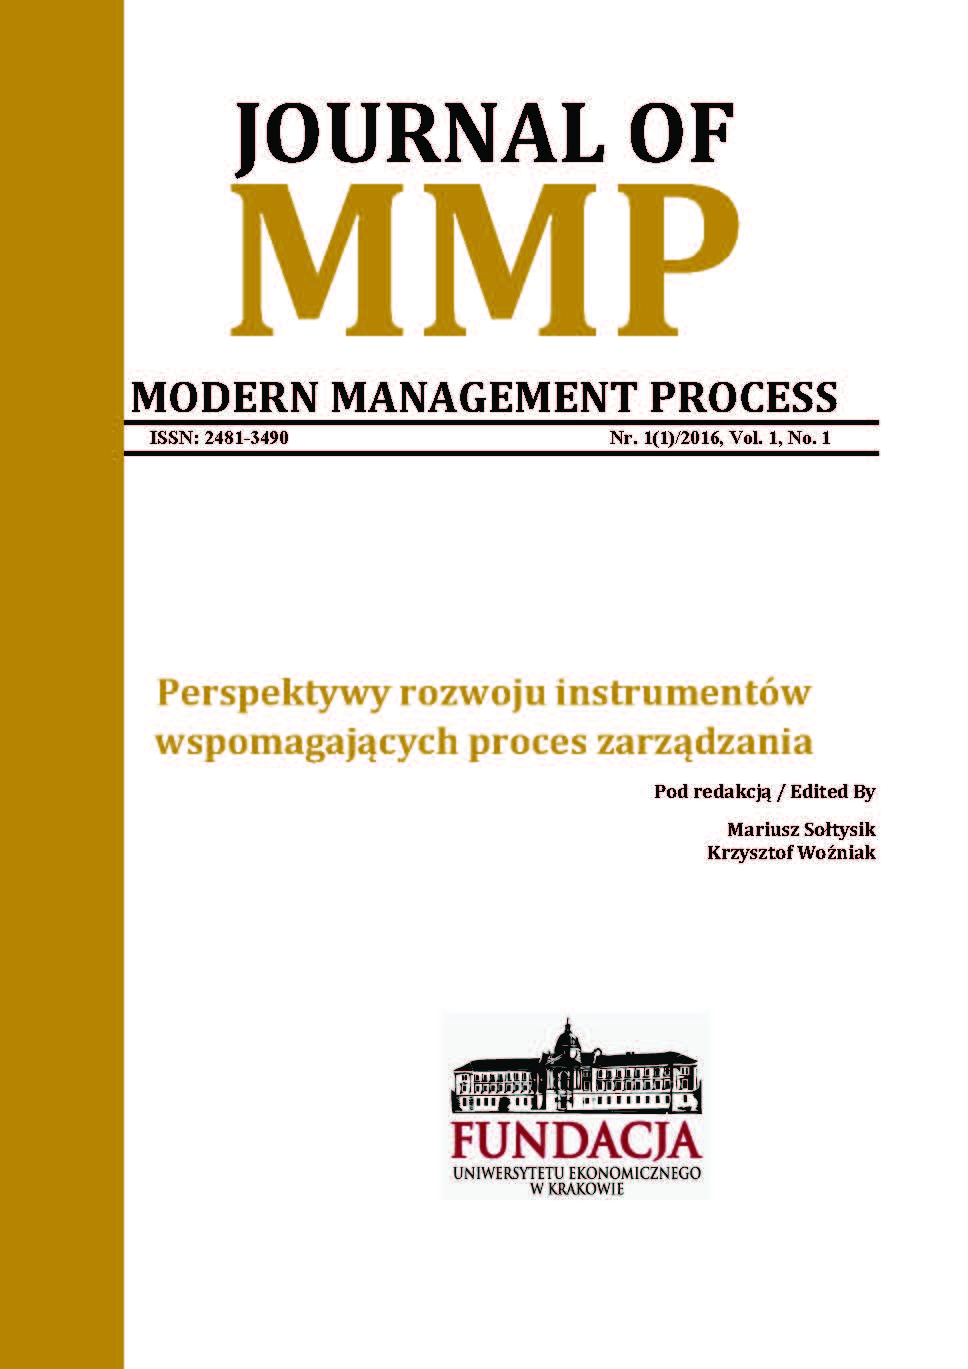 Journal of Modern Management Process